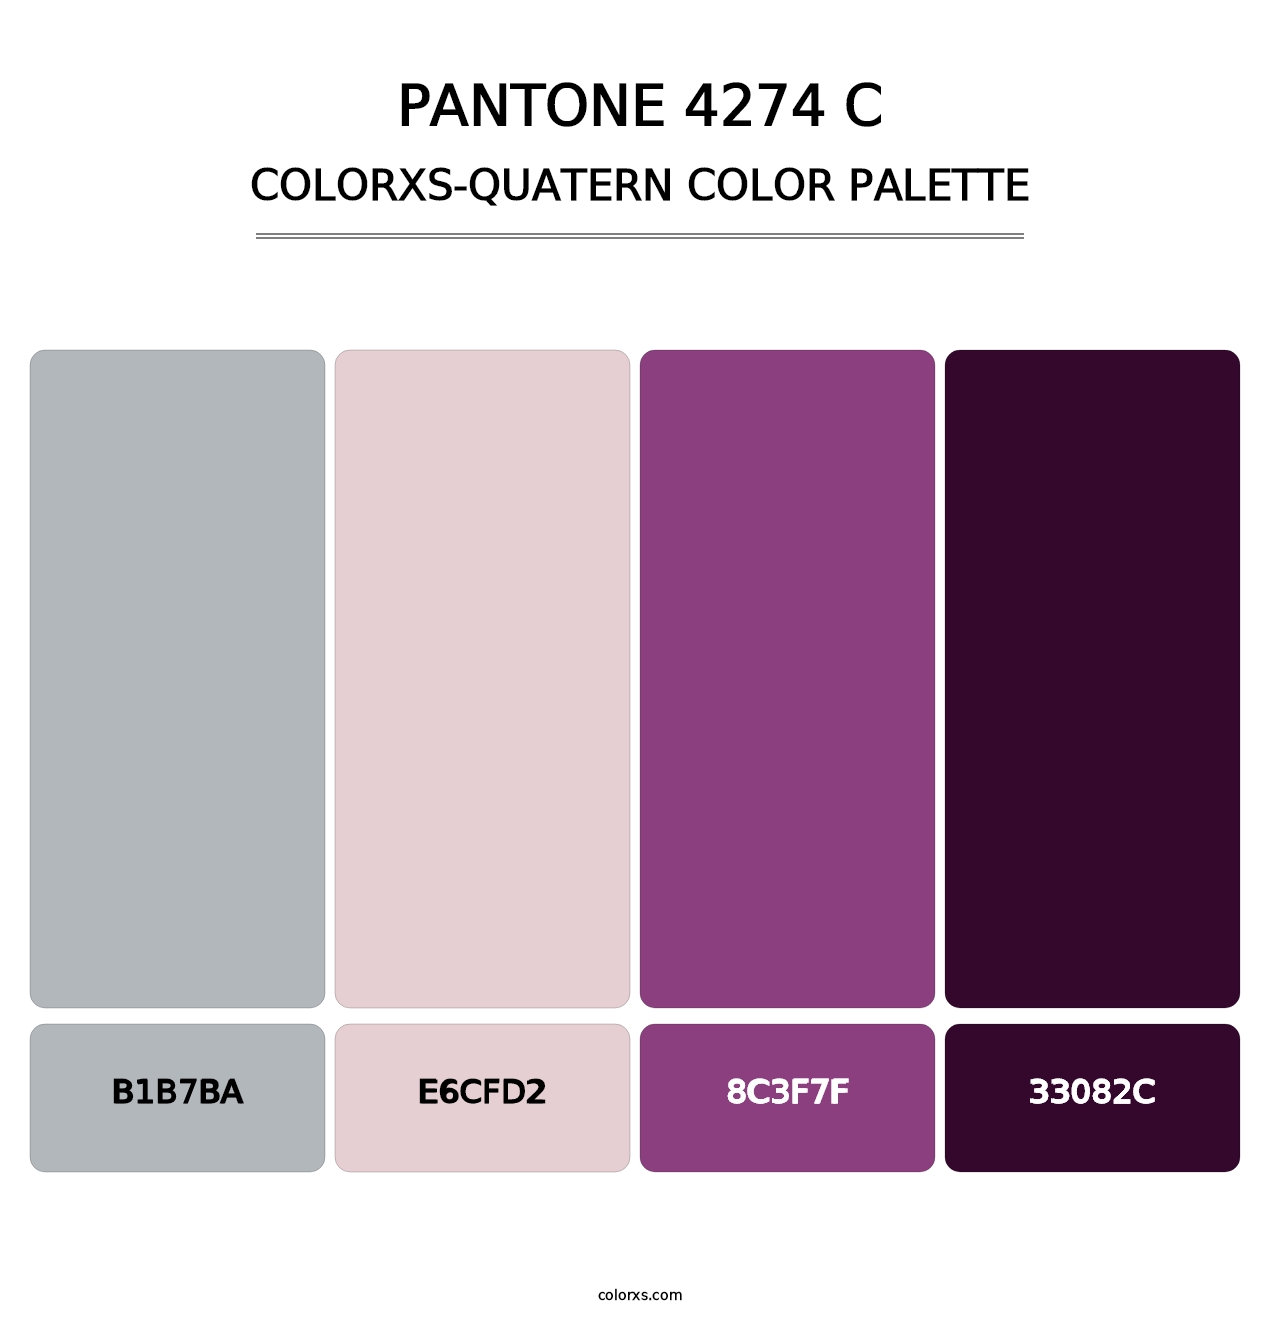 PANTONE 4274 C - Colorxs Quatern Palette